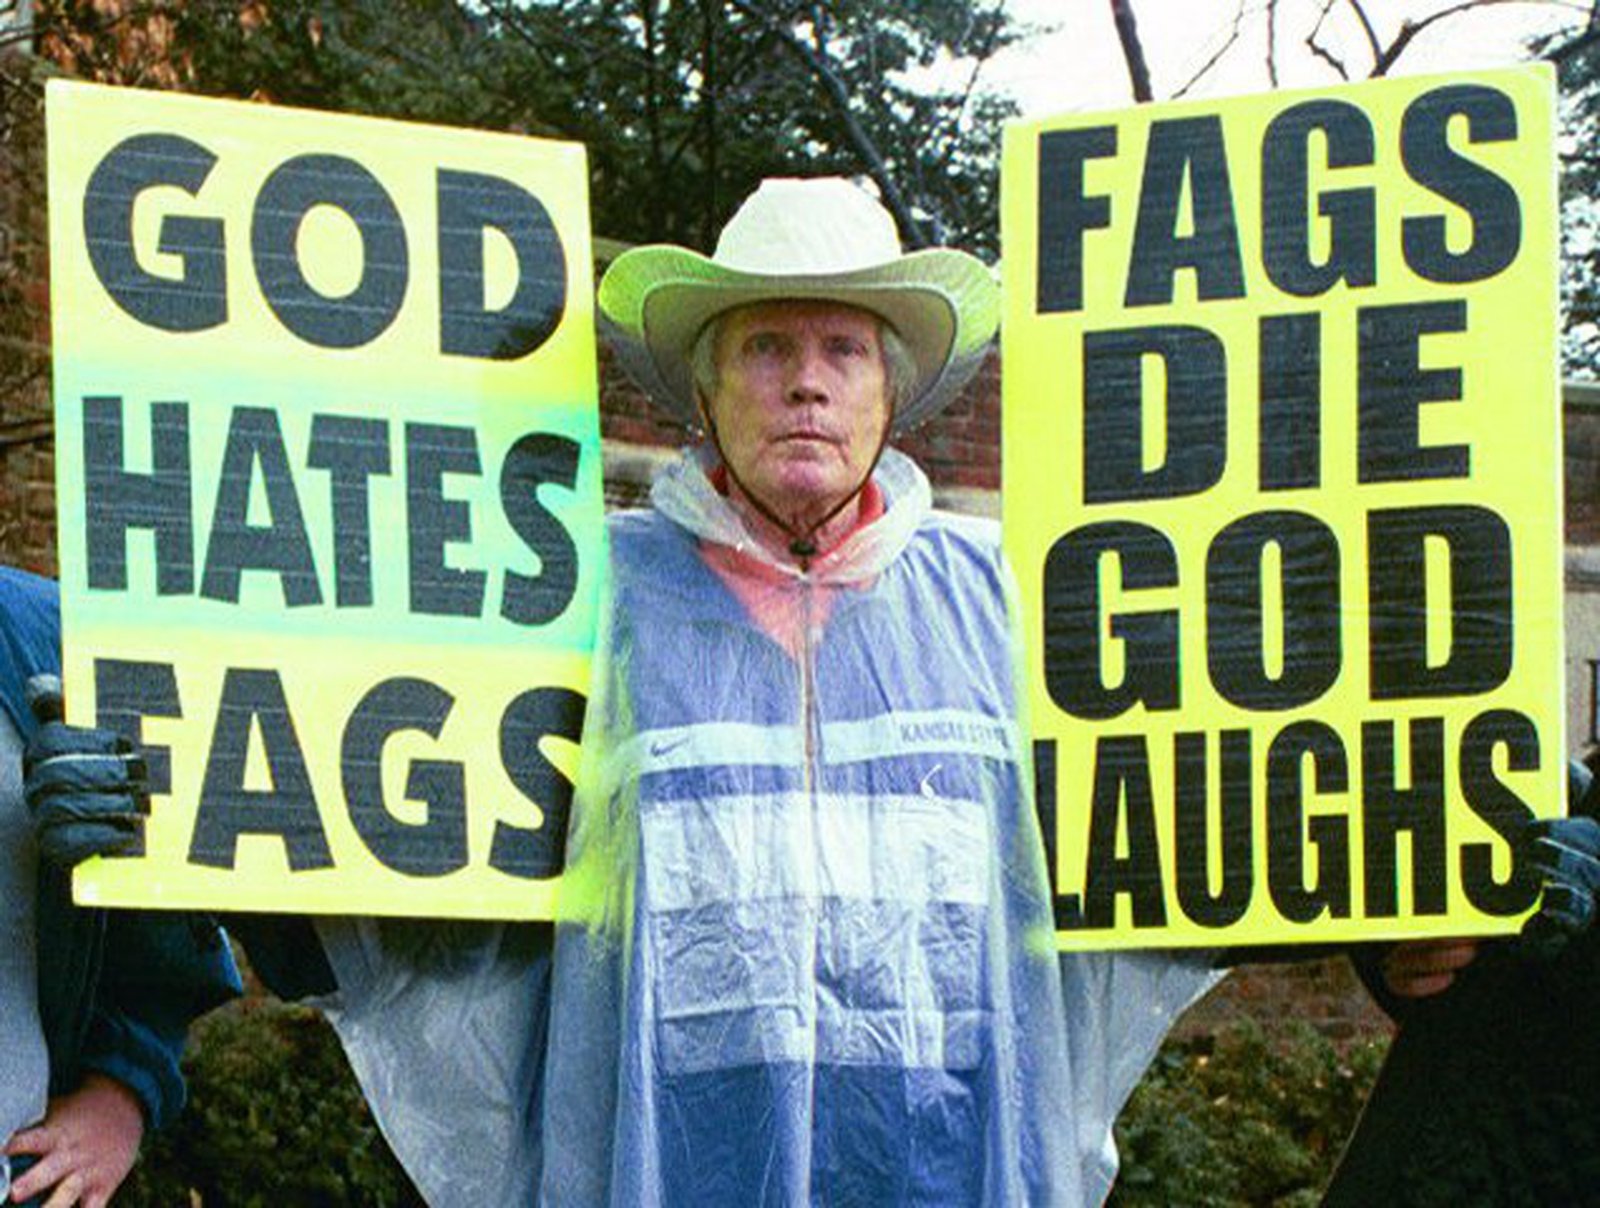 UK bans 'God hates fags' preacher